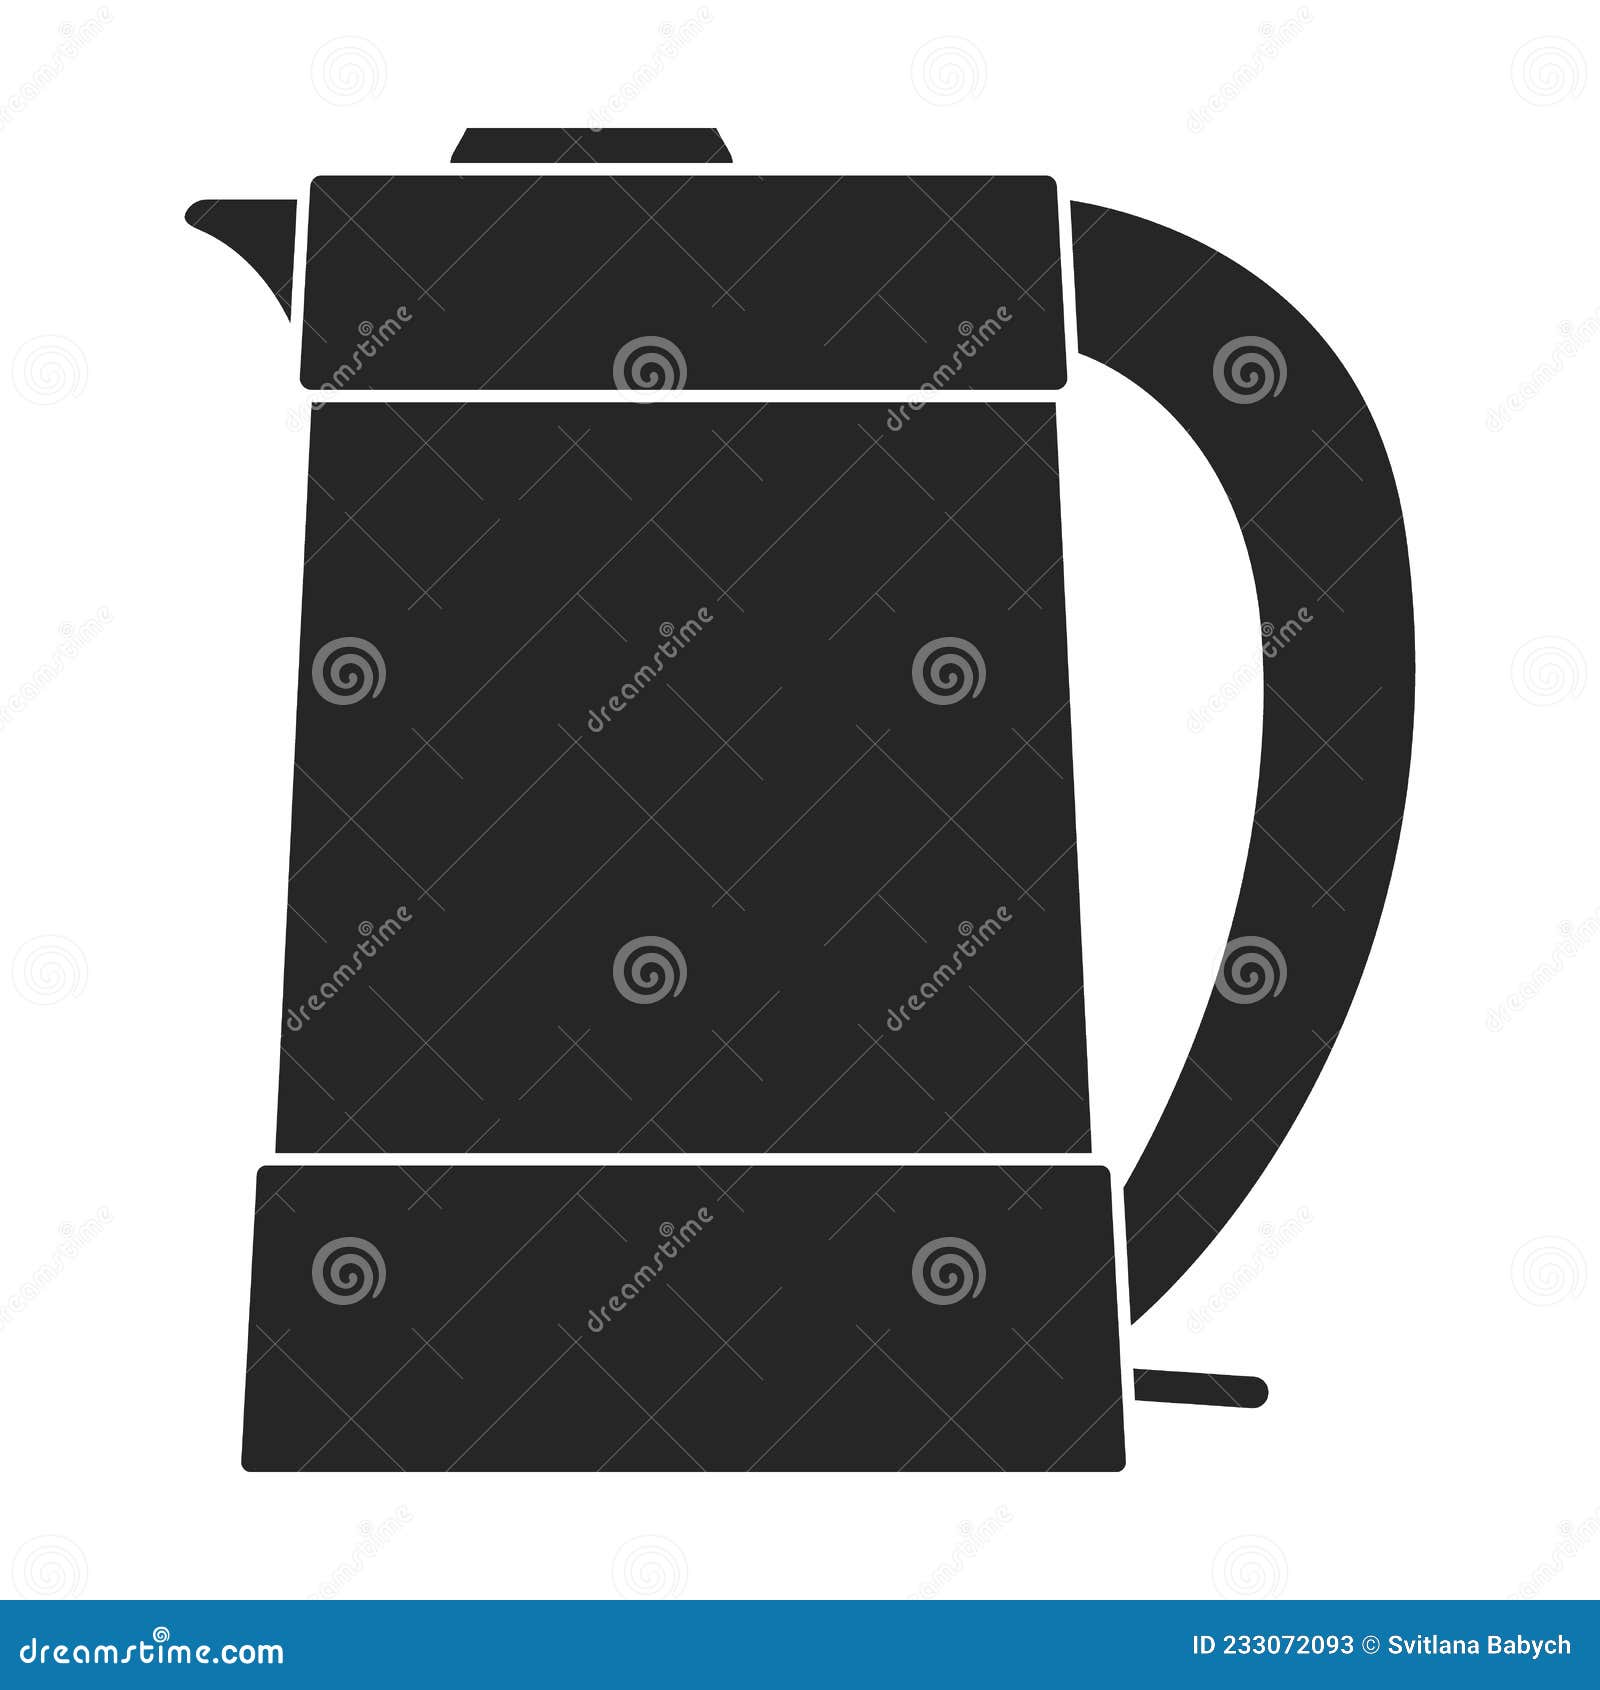 https://thumbs.dreamstime.com/z/kettle-vector-black-icon-vector-illustration-teapot-white-background-isolated-black-illustration-logo-kettle-kettle-vector-233072093.jpg